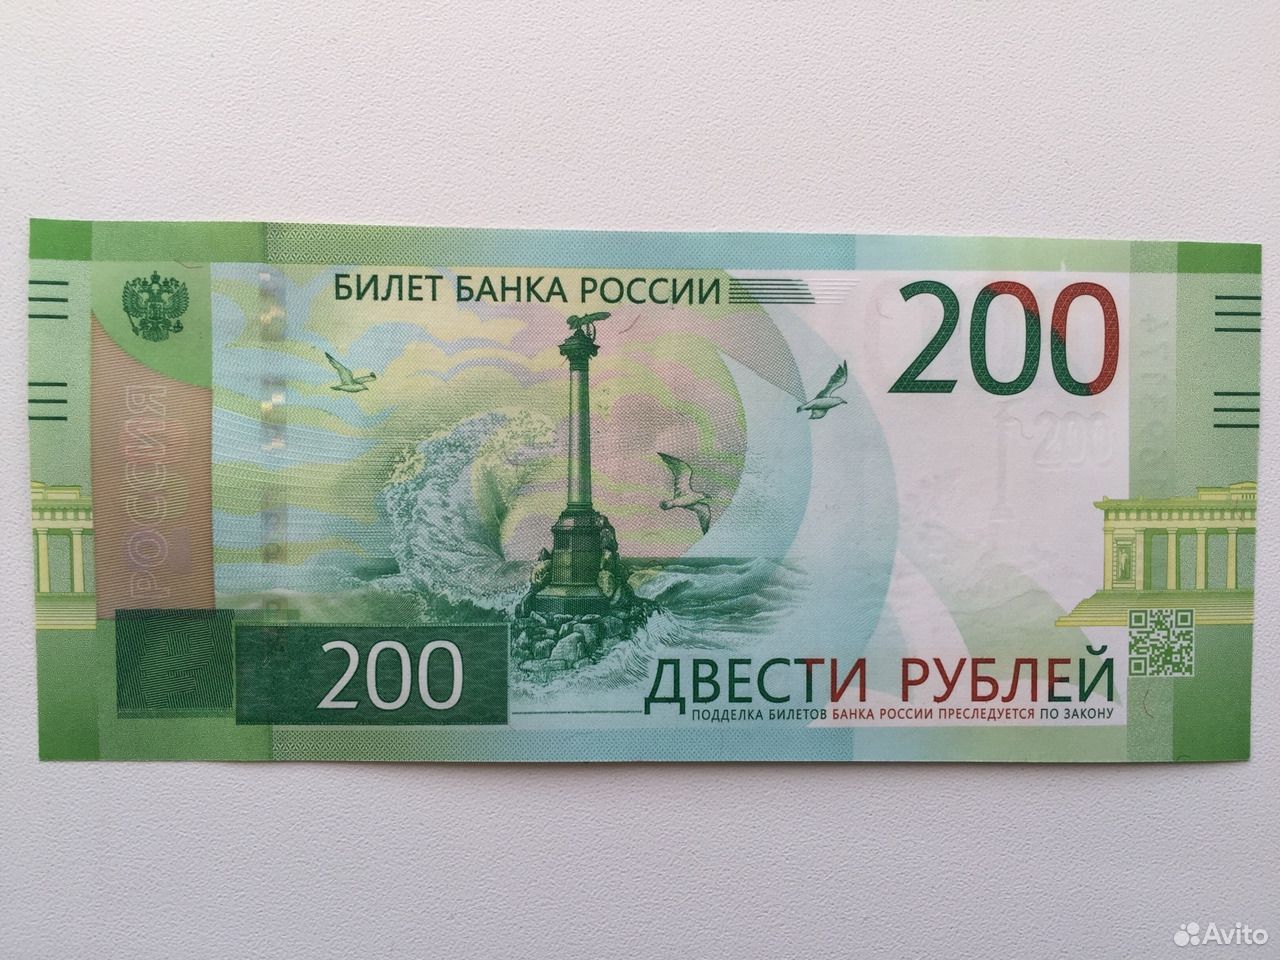 170 200 рублей. 200 Рублей 2017 года. 200 Рублей купюра 2017. Купюра 200 рублей 2017 года. 200 Рублей банкнота.